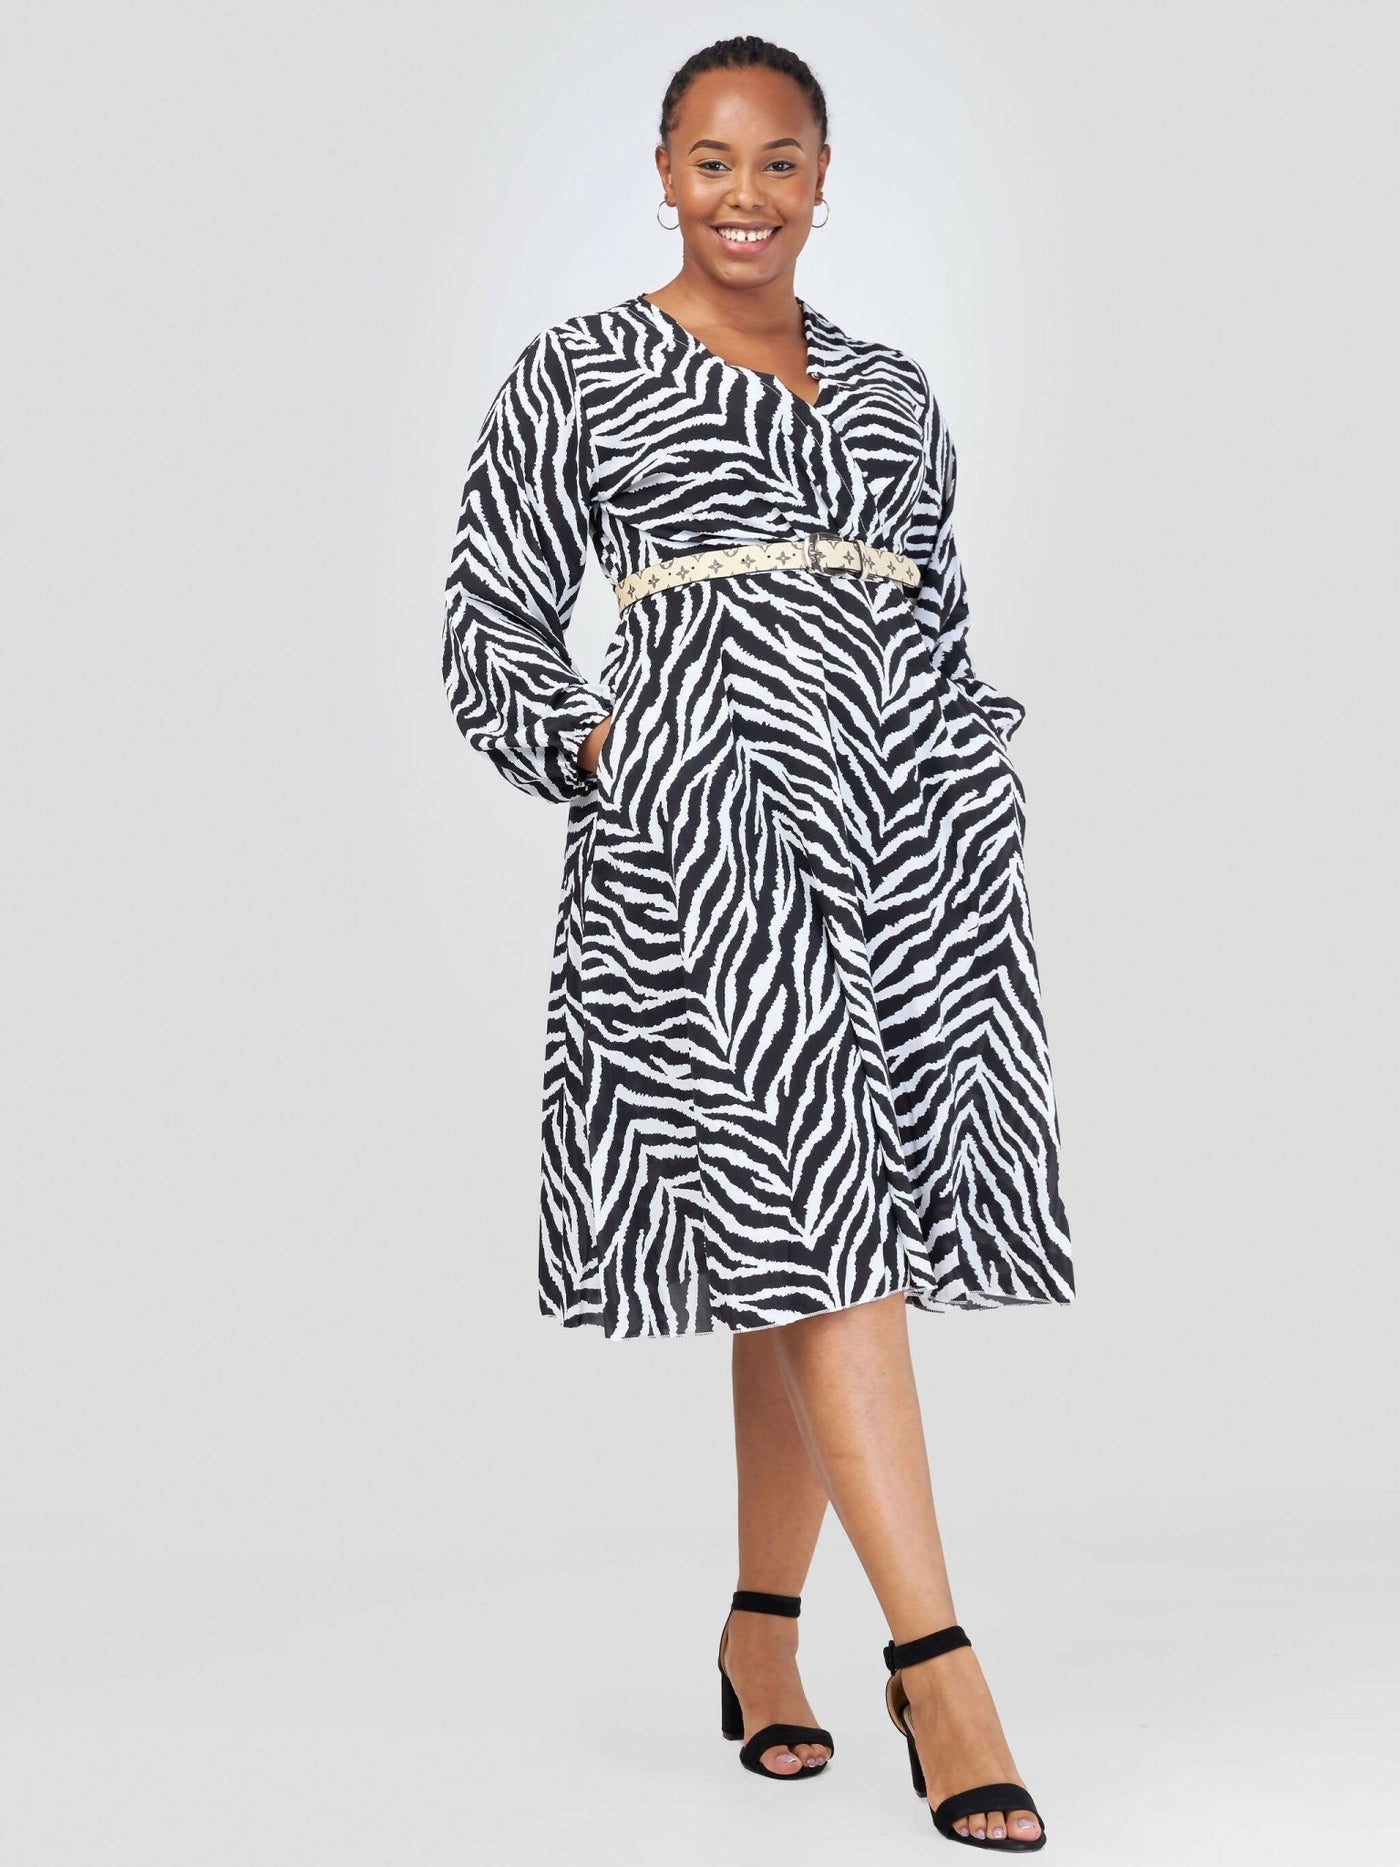 Home Of Colors Zebra Print Dress - Black/White - Shopzetu